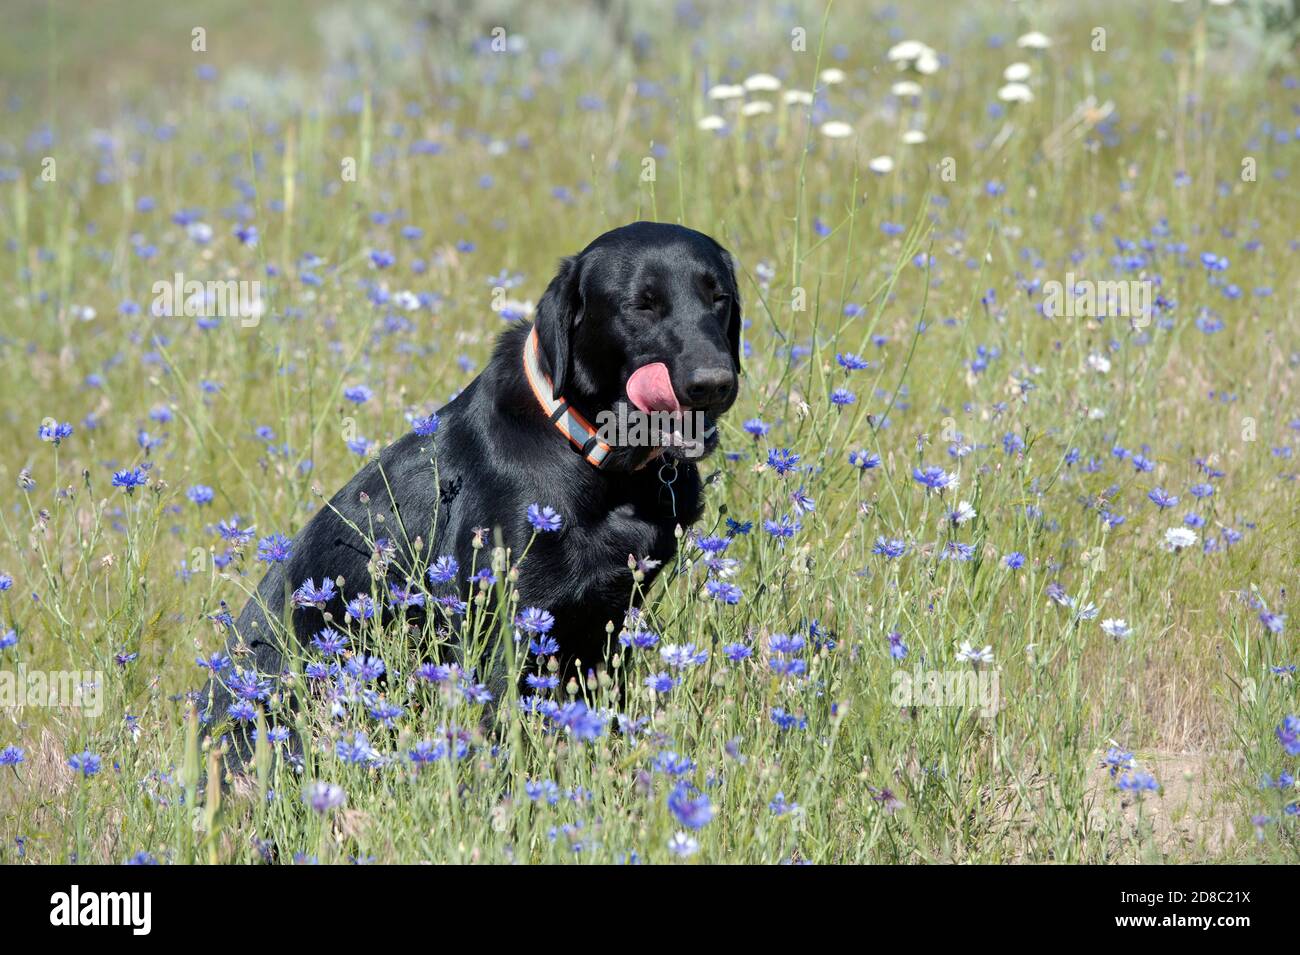 Schwarz Labrador Retriever leckt seine Schnauze, während er in einem sitzt Feld der Bachelor-Schaltflächen Stockfoto